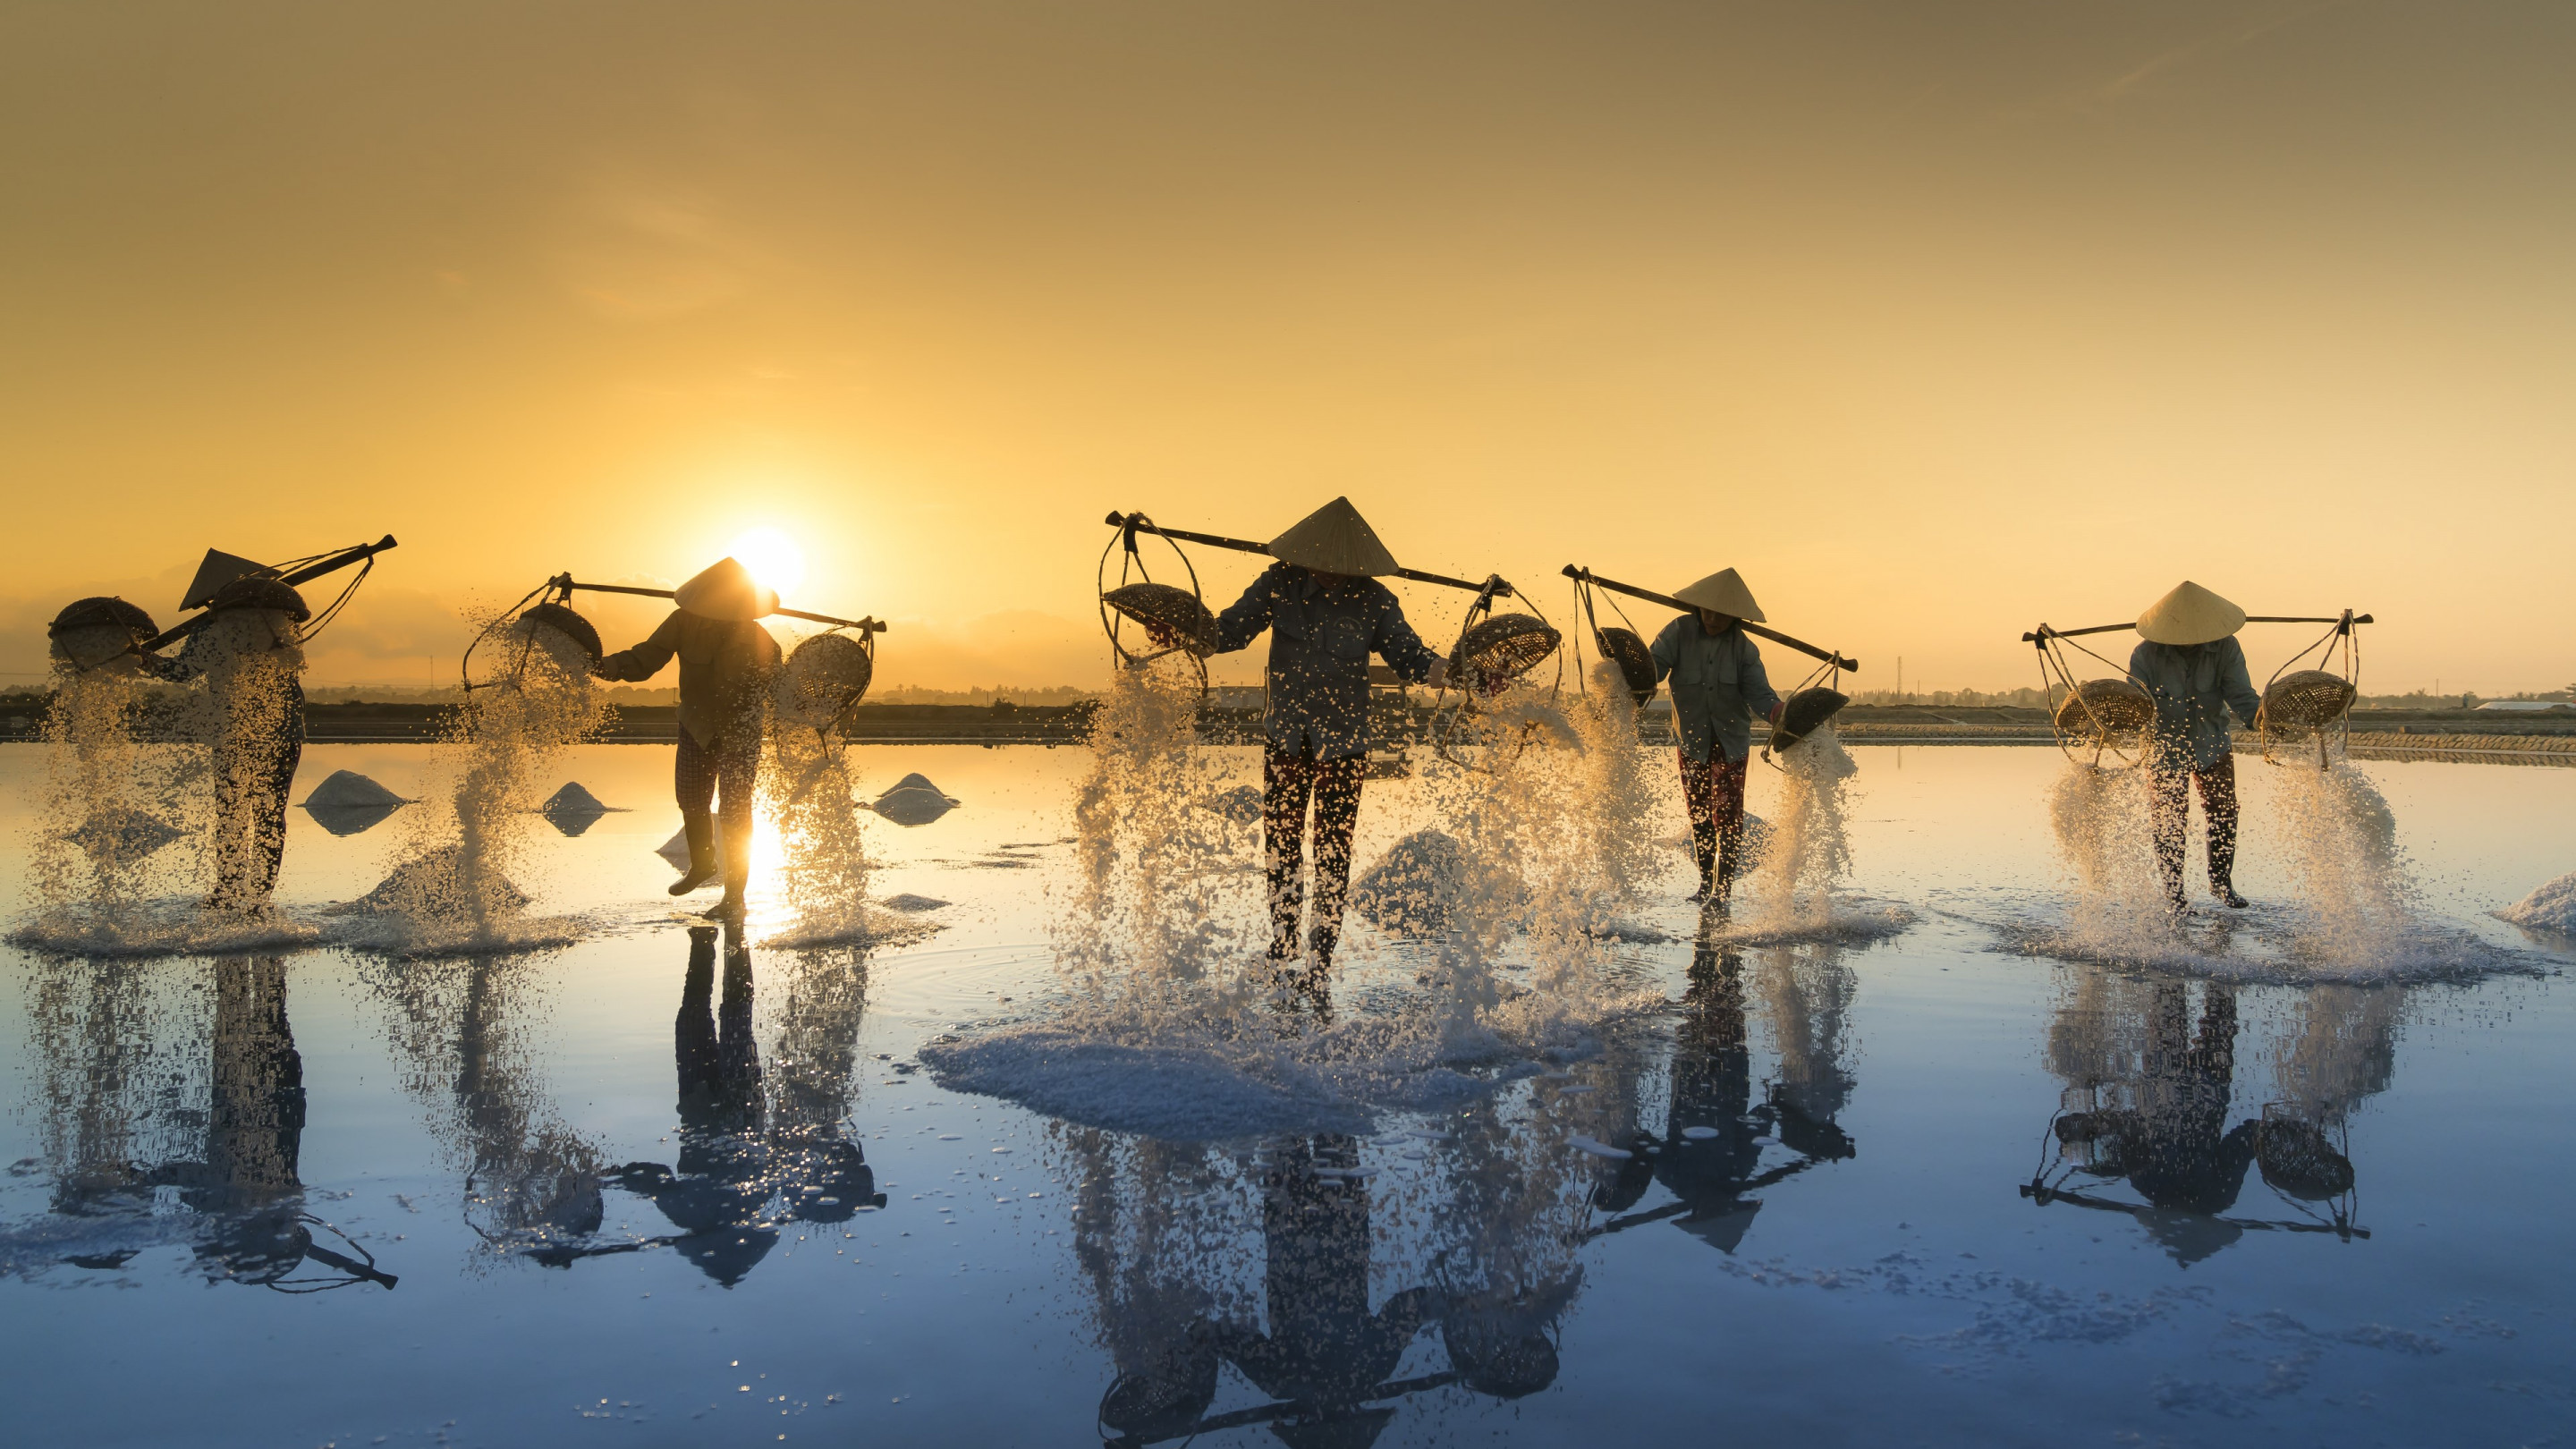 Download Wallpaper People Harvesting Salt In Vietnam x16